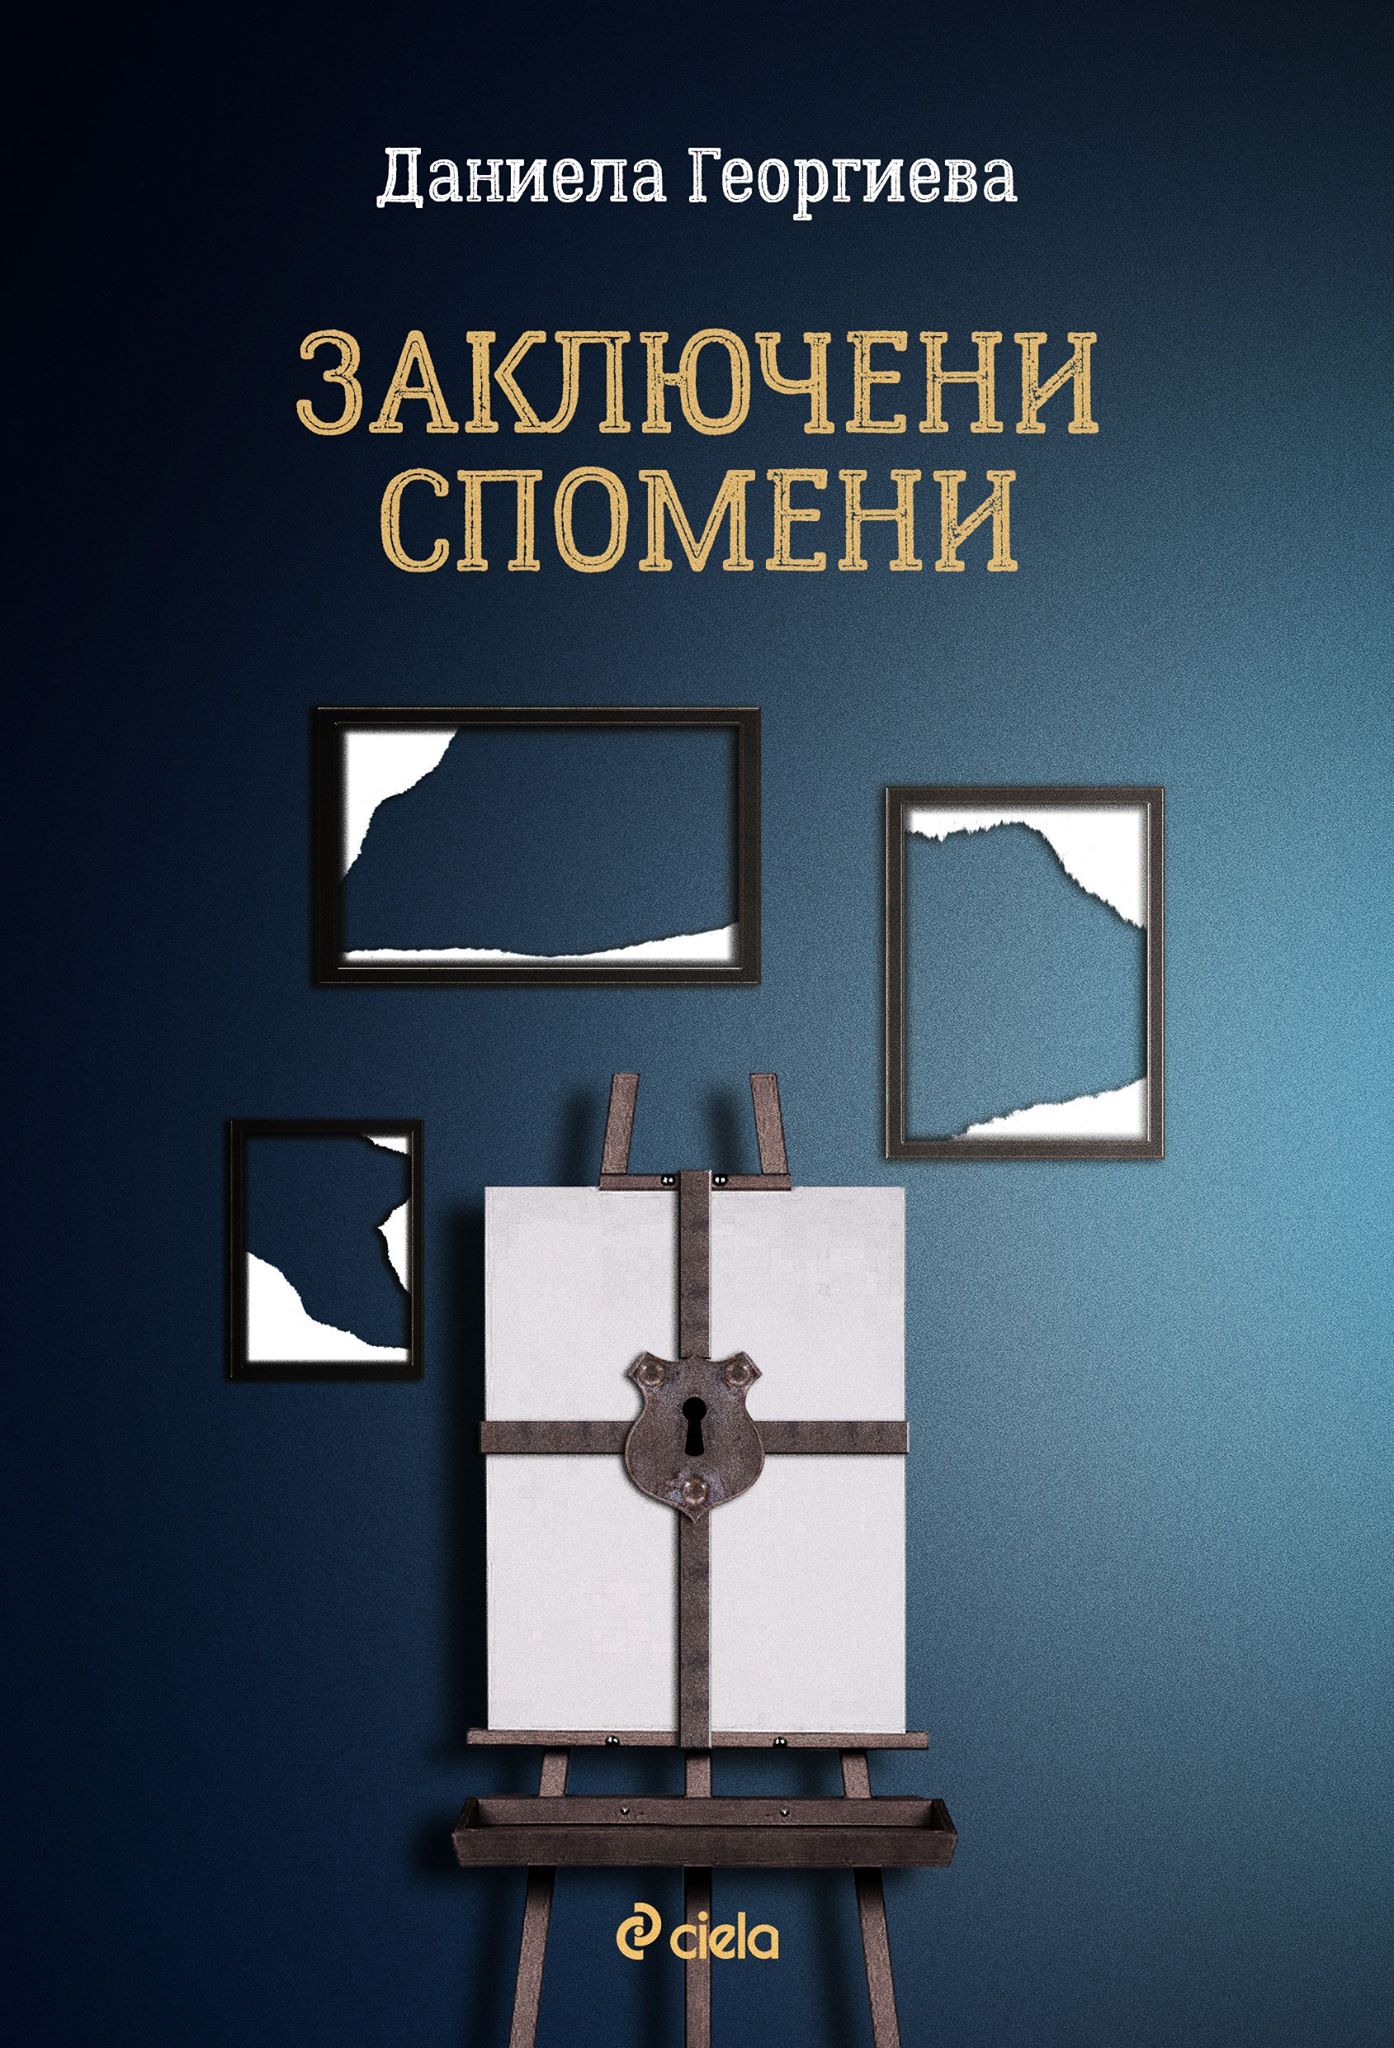 Премиера на романа "Заключени спомени" от Даниела Георгиева